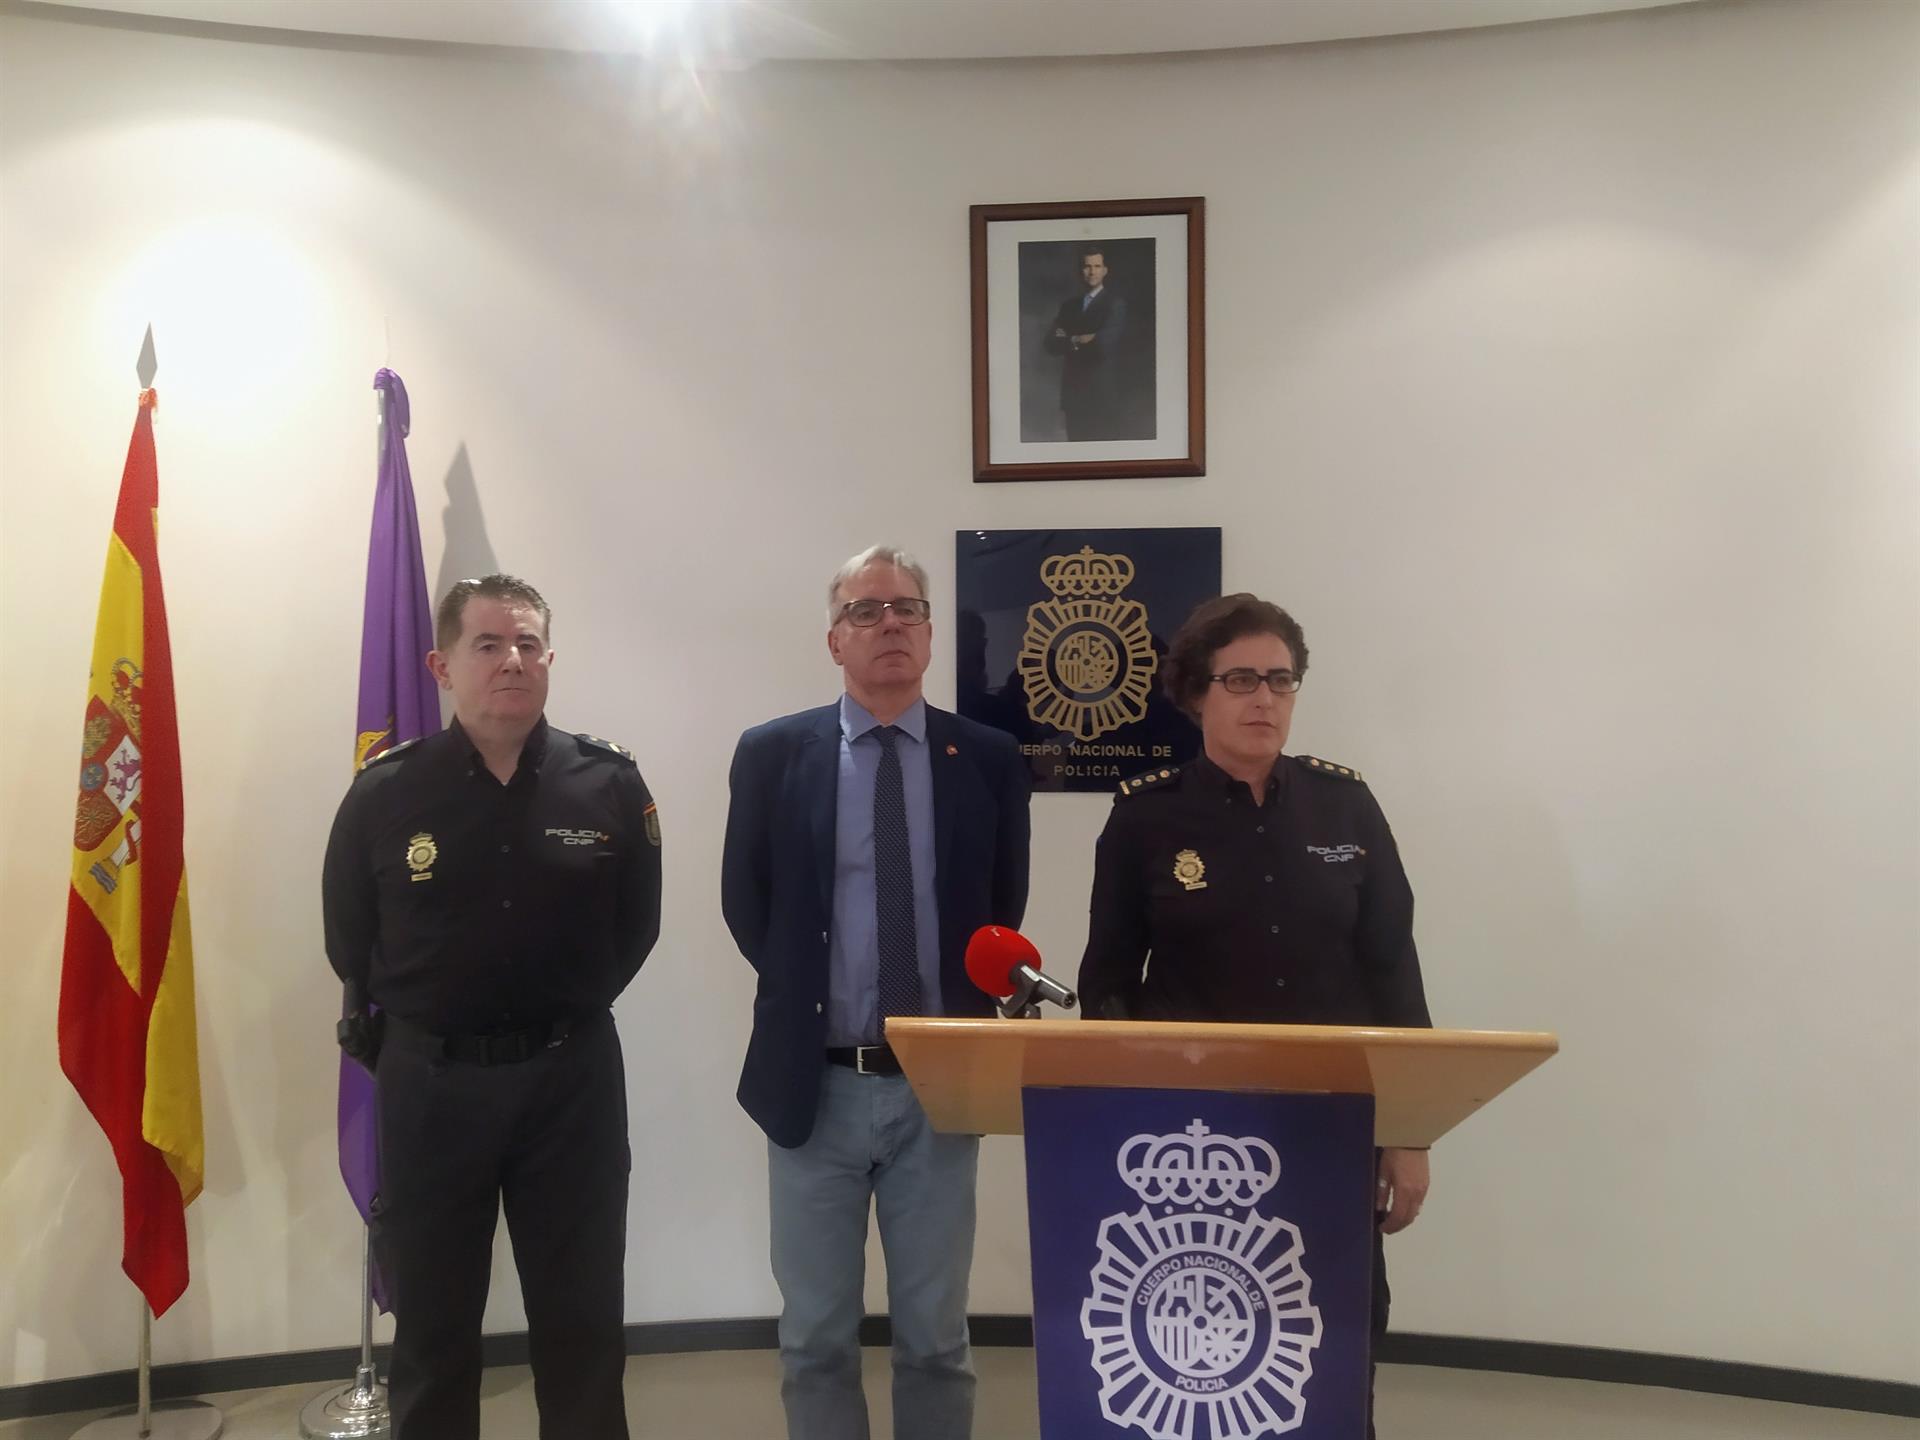 La comisaria de Palencia, Monserrat Marín, acompañada del subdelegado del Gobierno, Ángel Miguel Gutiérrez (centro) informa sobre un caso de presunto aborto